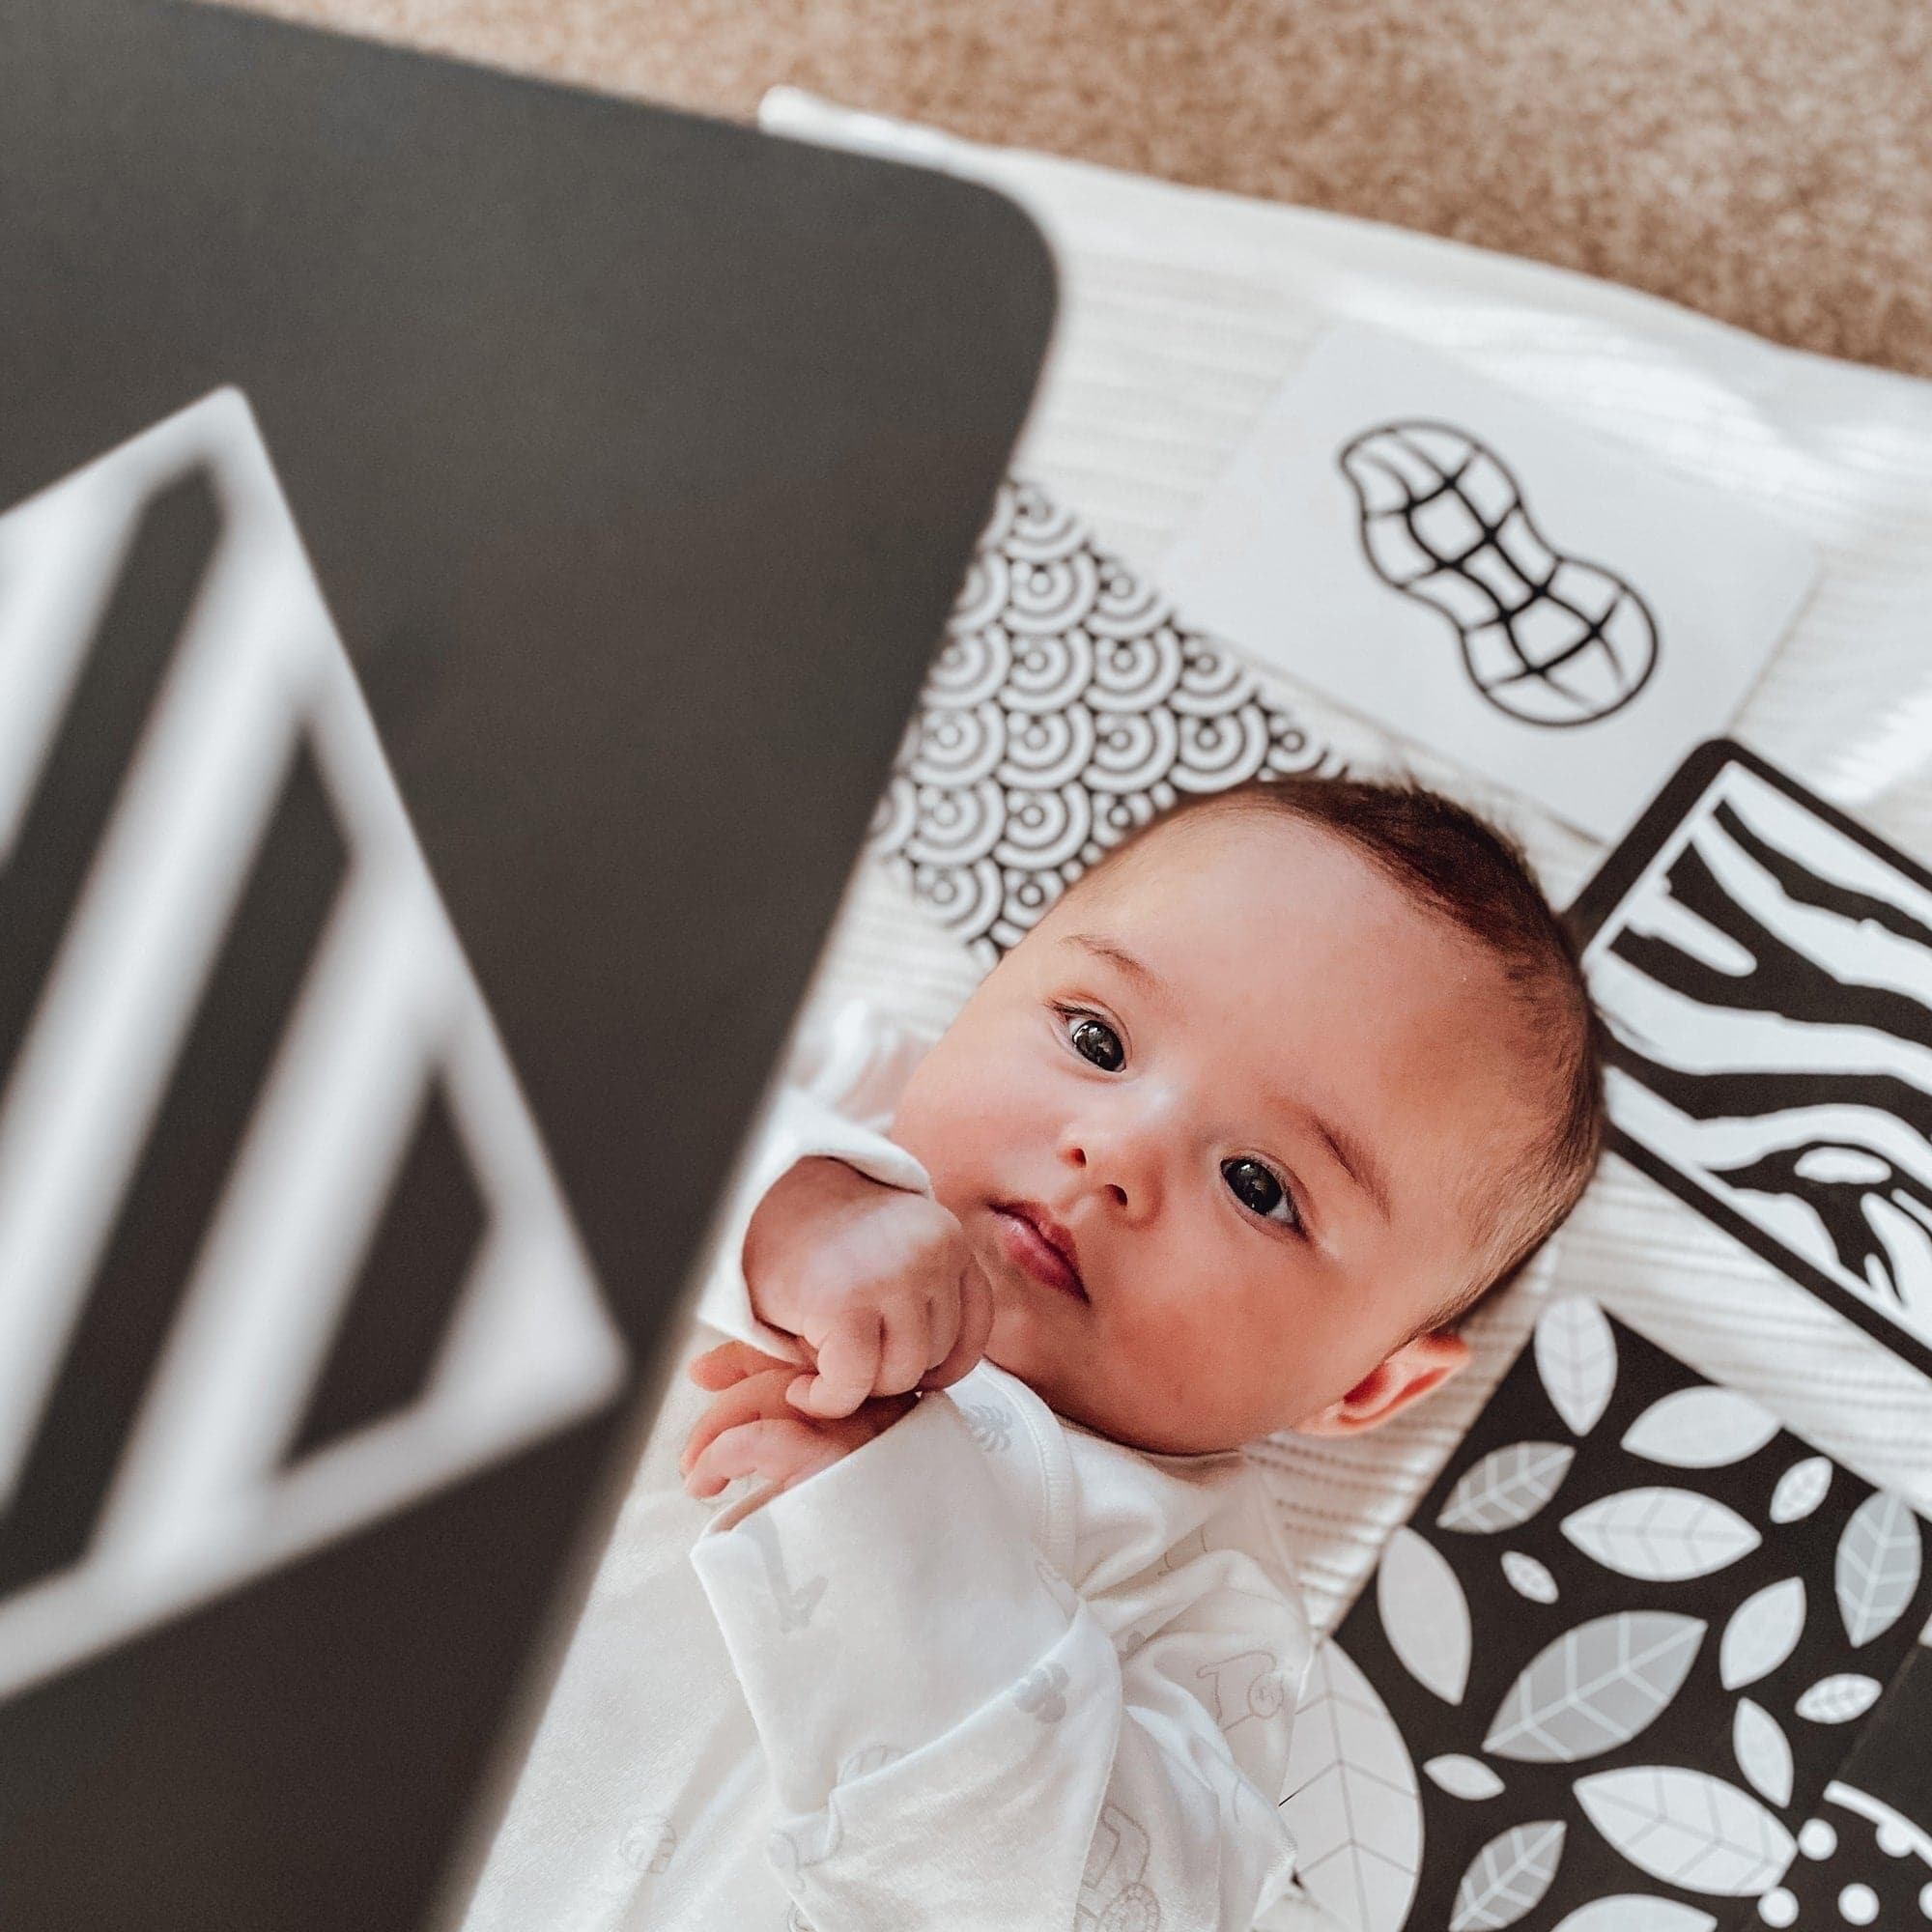 Flashcards sensoriels pour bébé de 0 mois et plus